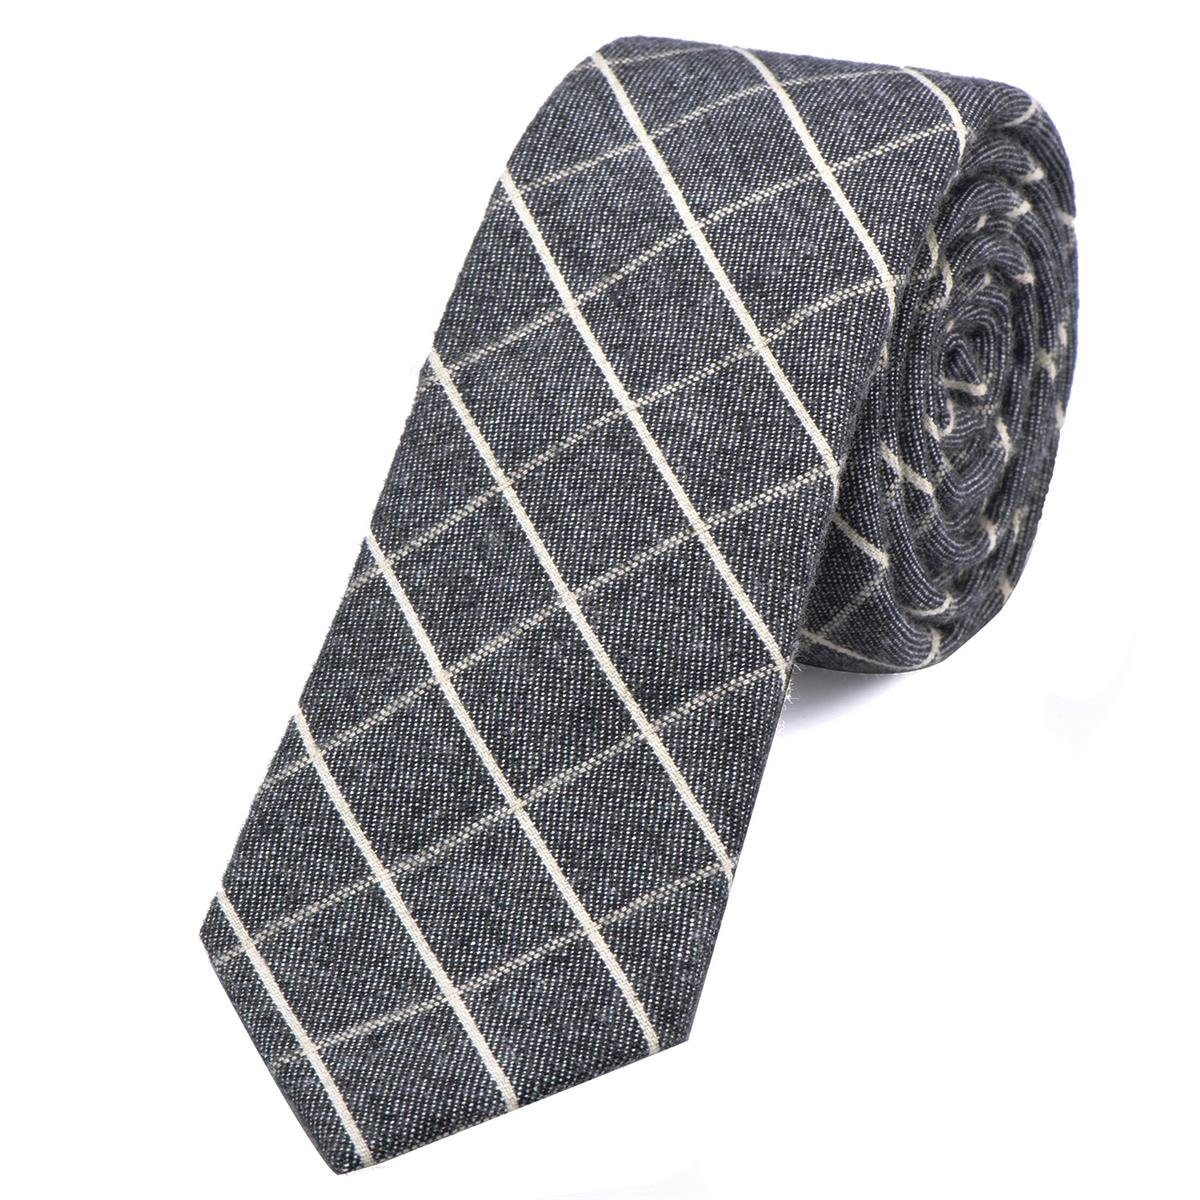 DonDon Krawatte Herren Krawatte 6 cm mit Karos oder Streifen (Packung, 1-St., 1x Krawatte) Baumwolle, kariert oder gestreift, für Büro oder festliche Veranstaltungen grau-weiß kariert